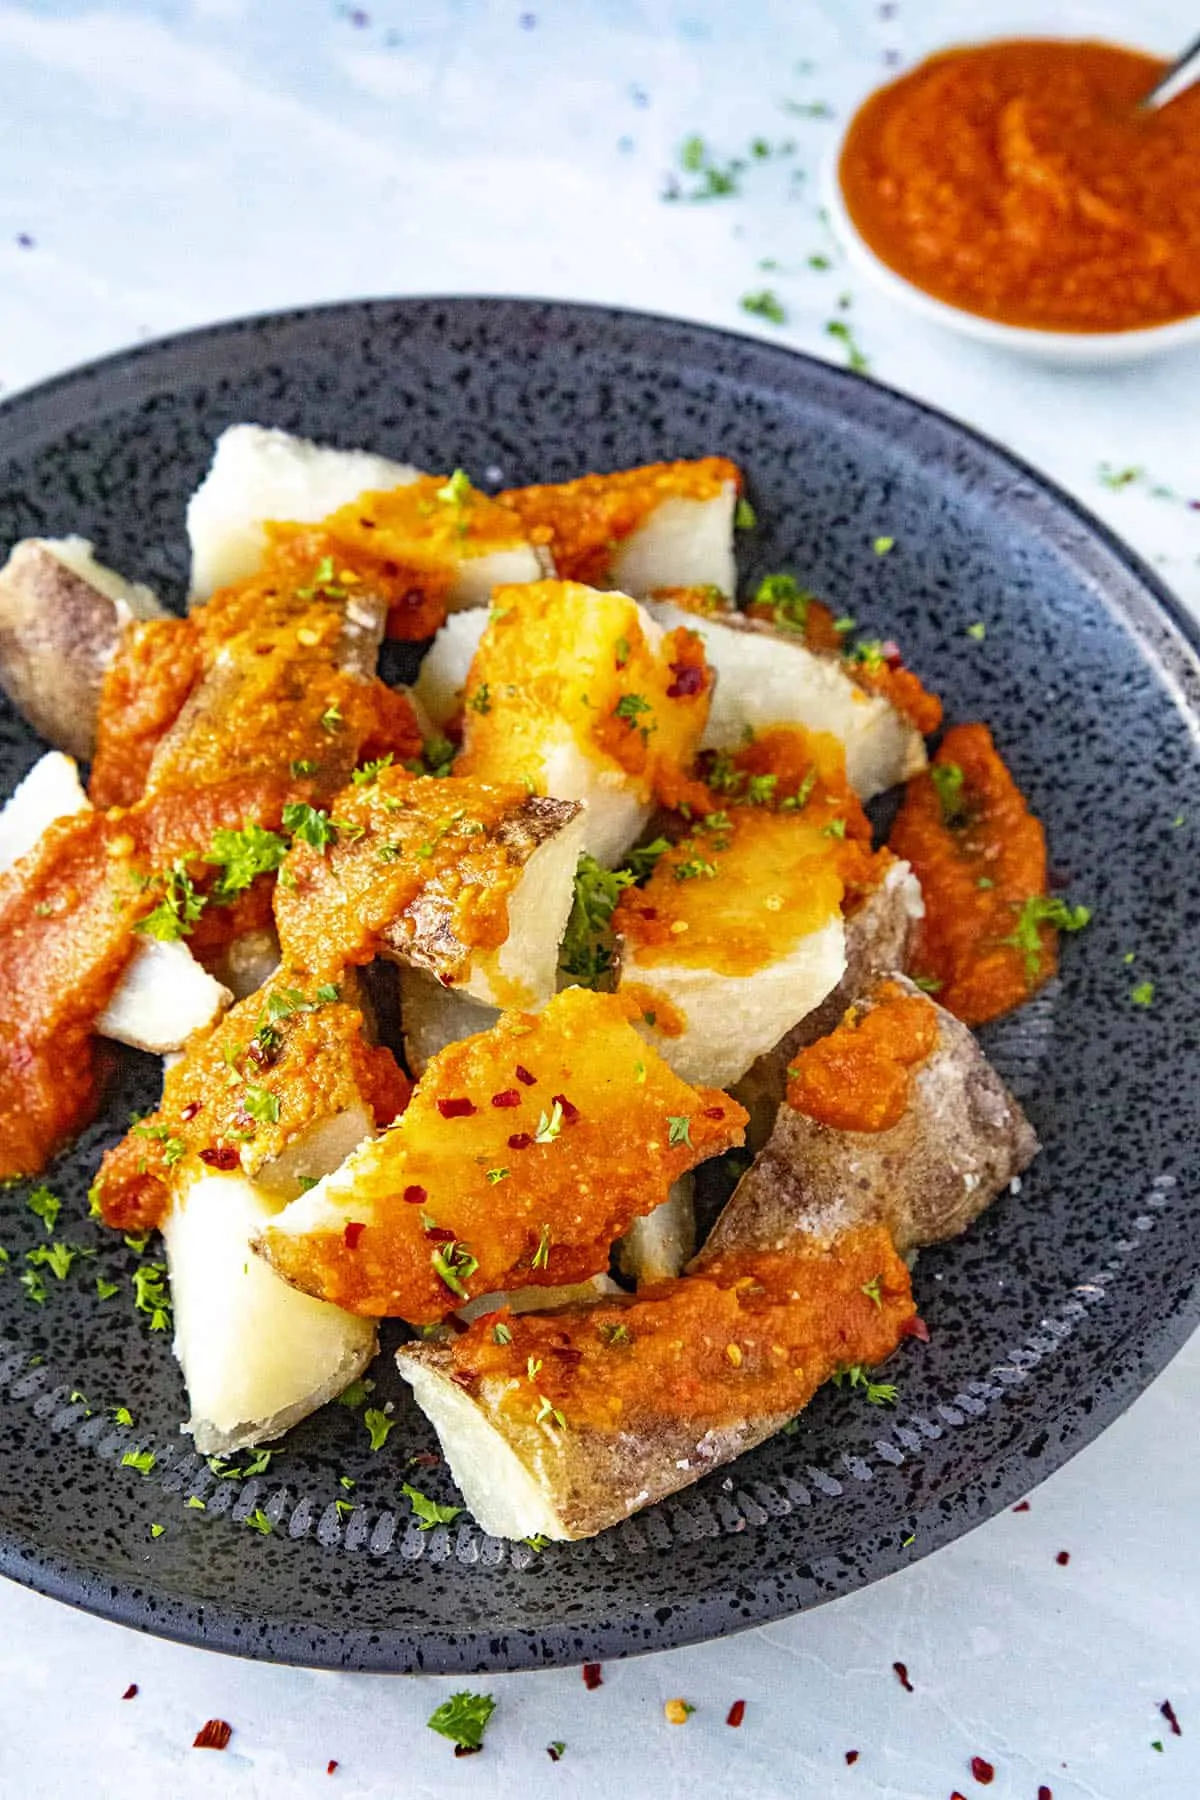 Patatas Bravas served on a plate